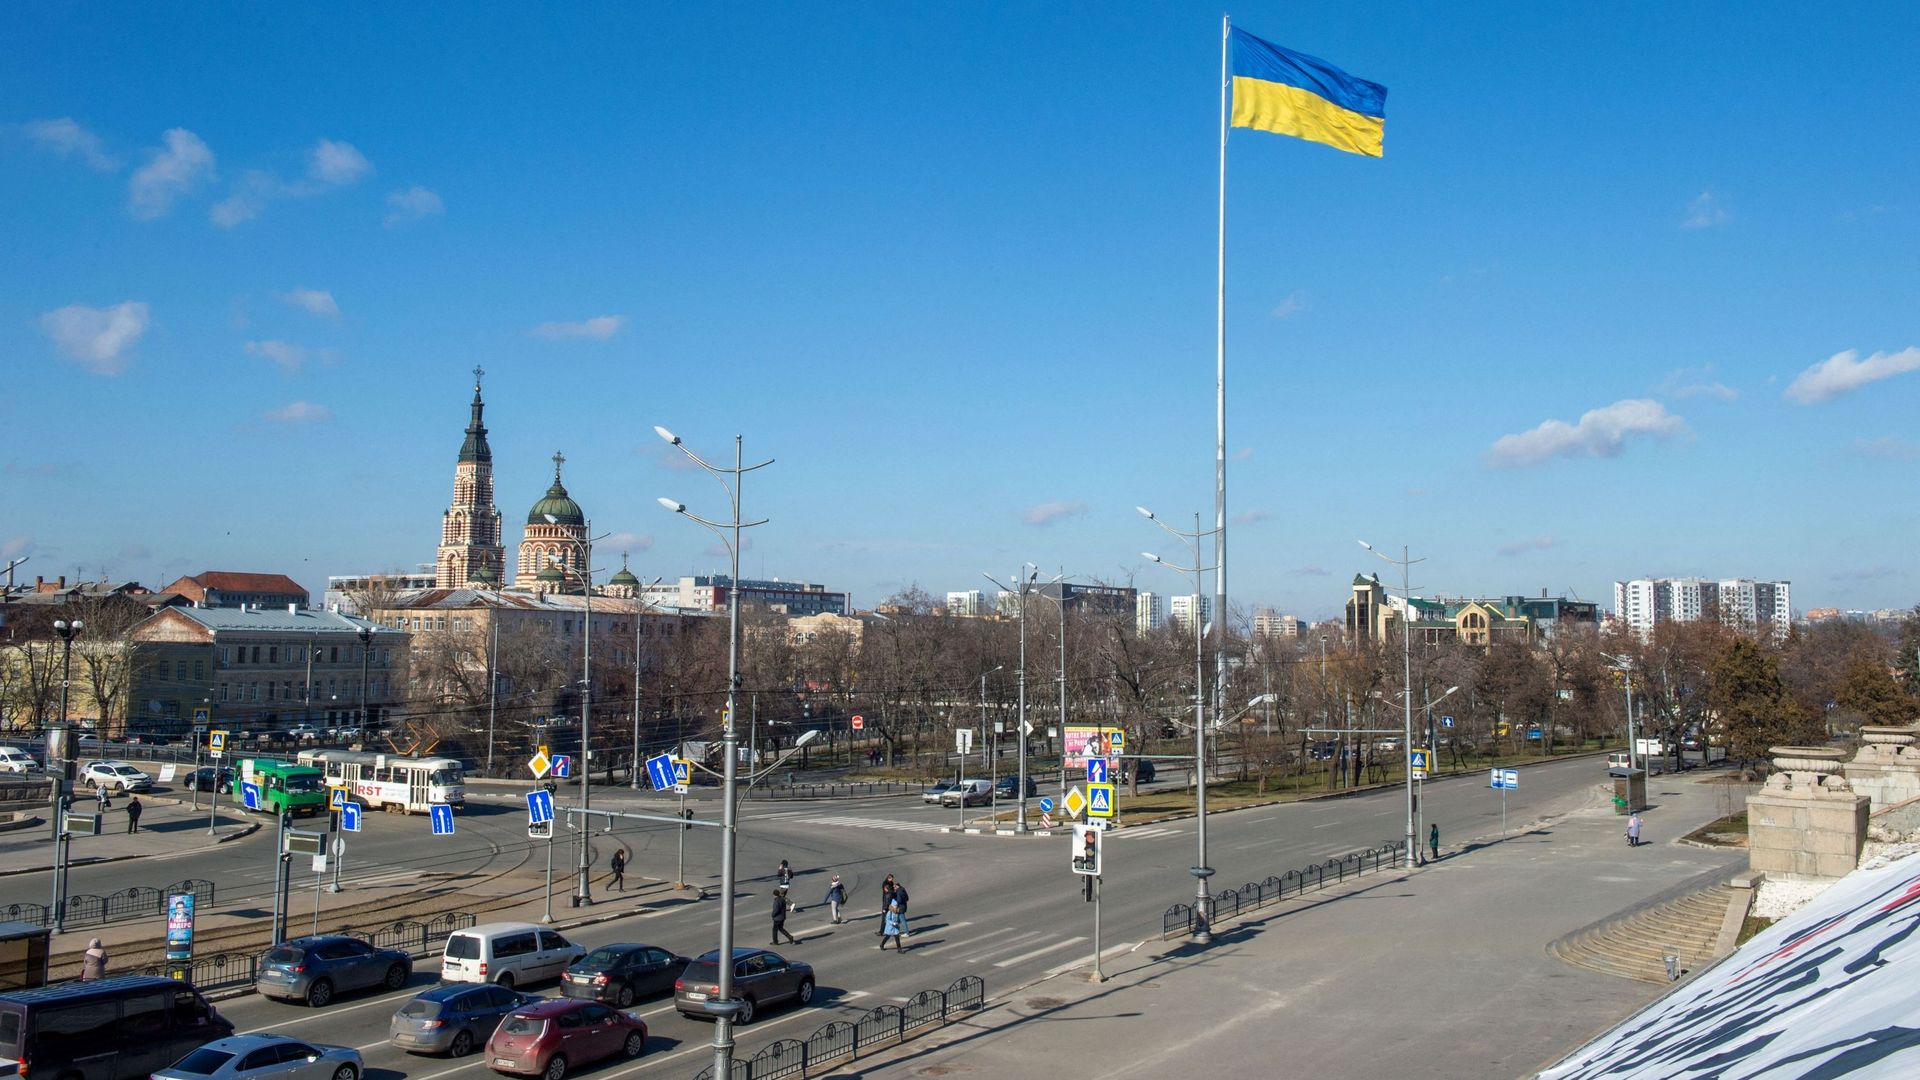 Le drapeau national ukrainien flotte dans le centre de Kharkiv, deuxième ville d'Ukraine, à quelque 40 km de la frontière ukraino-russe, le 21 février 2022. L'Ukraine a demandé une réunion d'urgence du Conseil de sécurité des Nations unies pour faire face